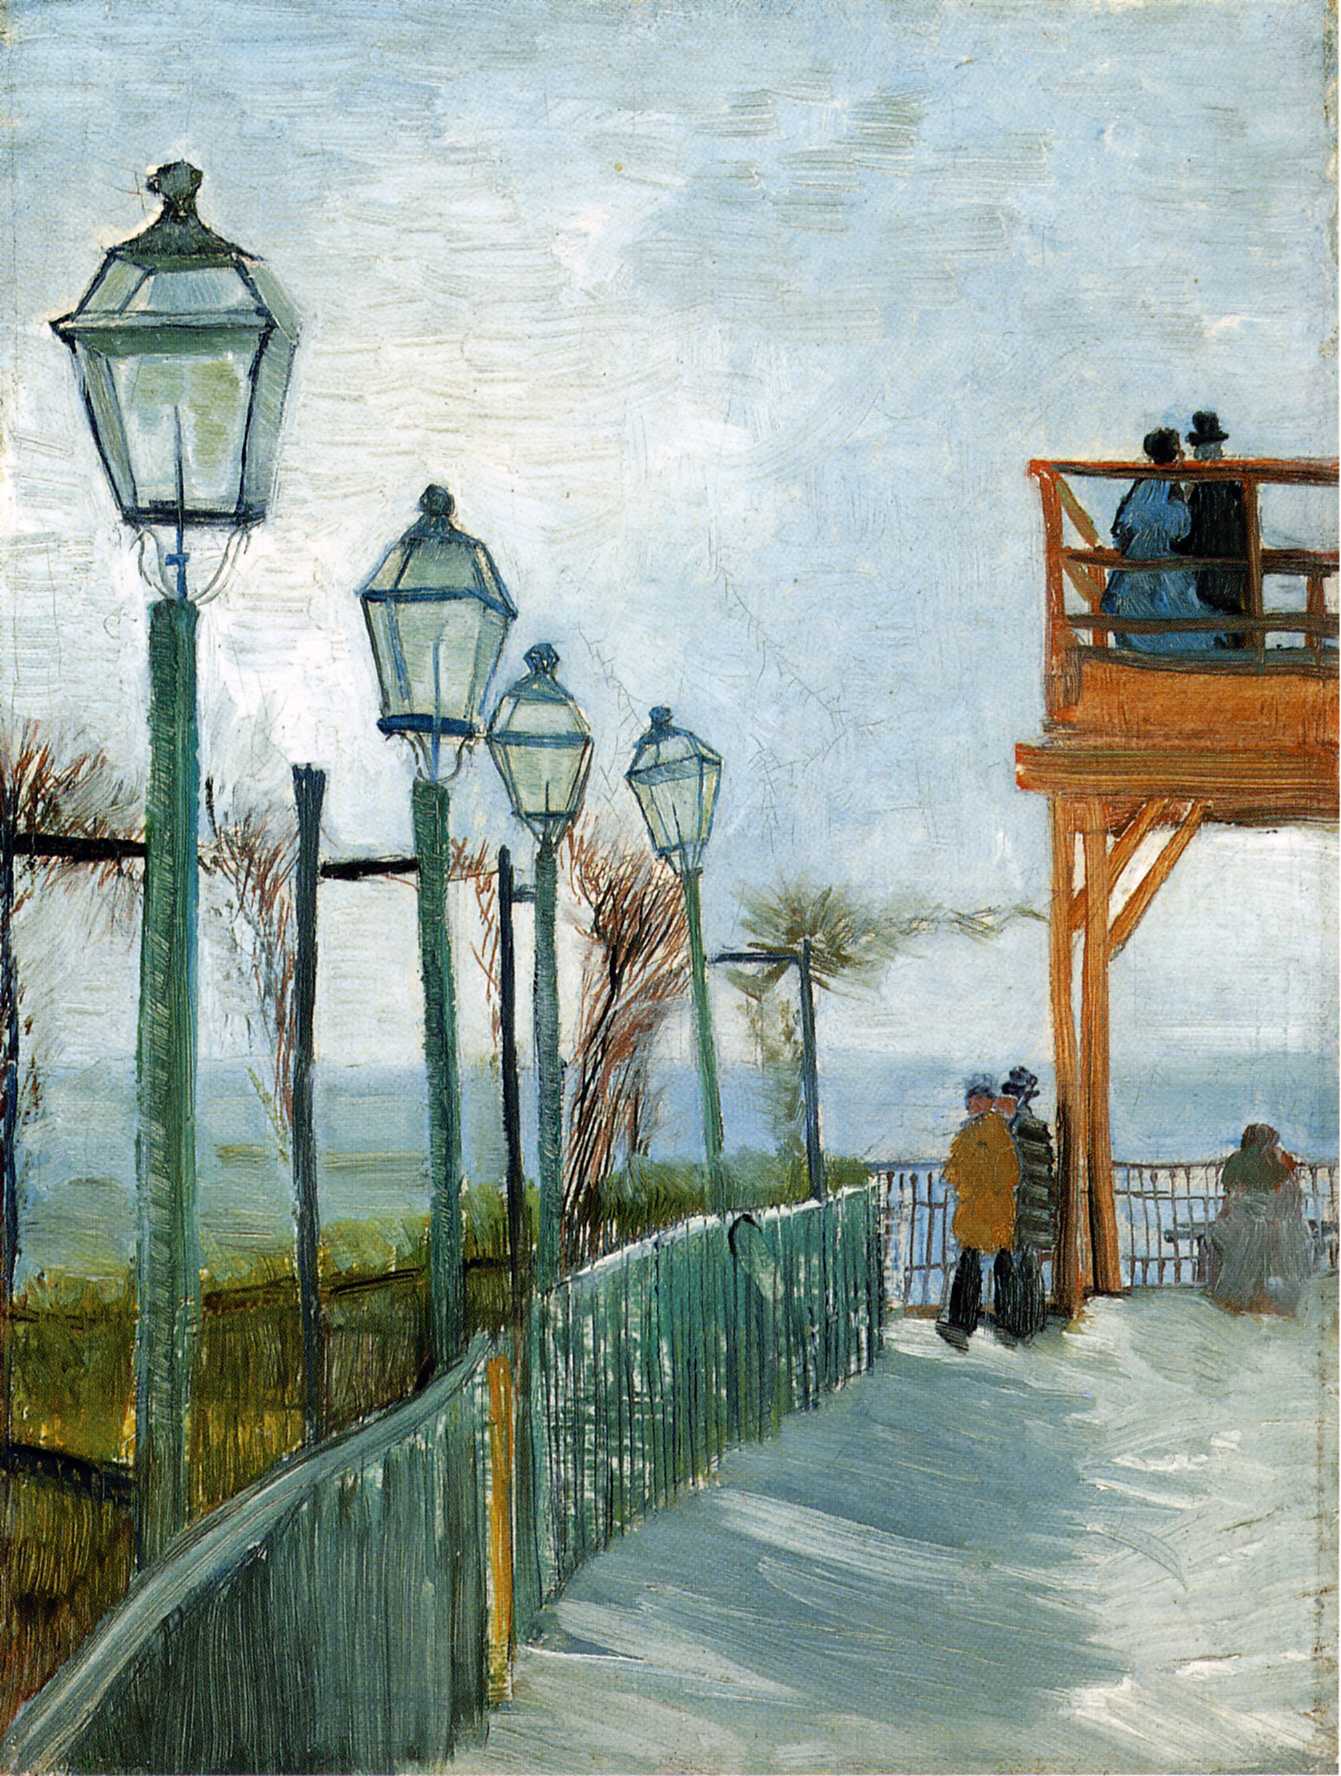 Belvedere Overlooking Montmartre by Vincent van Gogh - 1886 - - Art Institute of Chicago